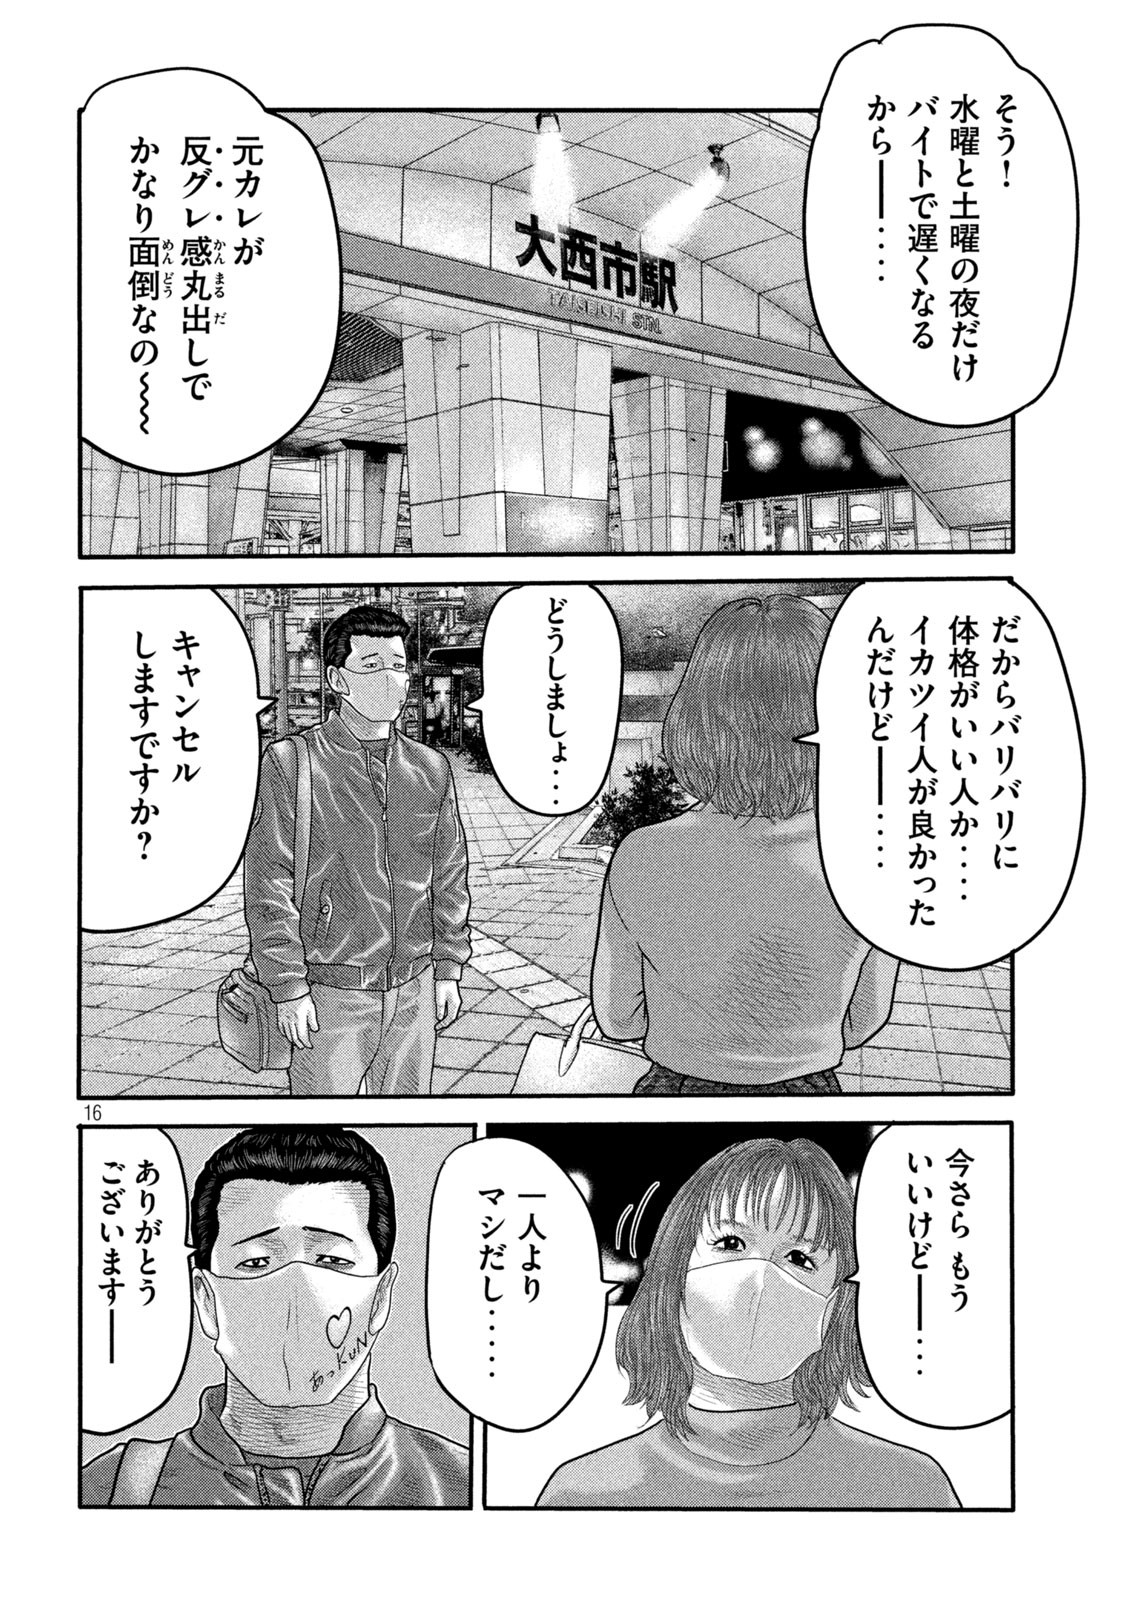 ザ・ファブル The Second Contact 第2話 - Page 16